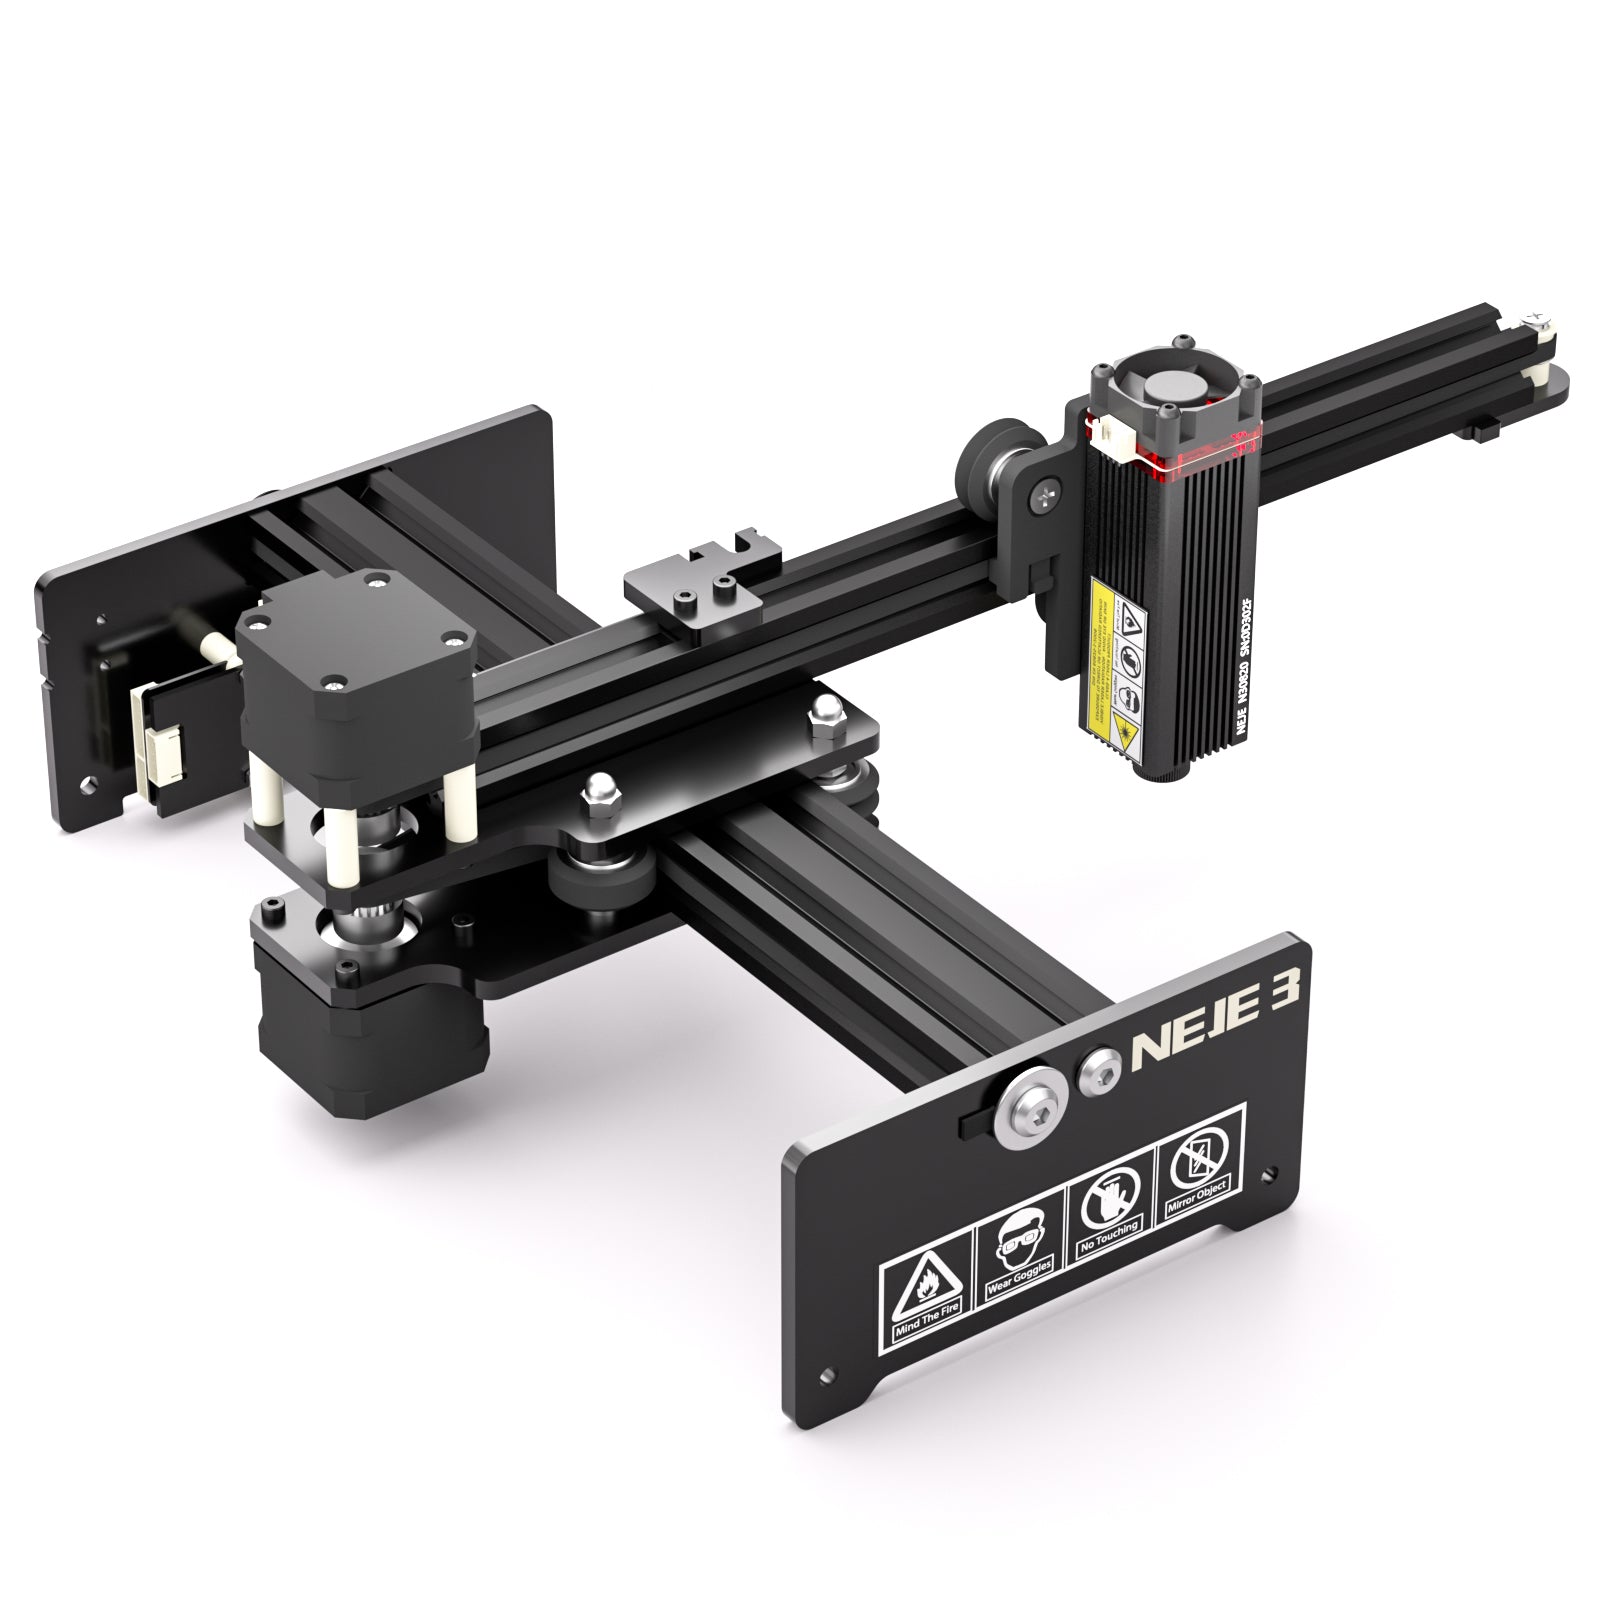 NEJE 3 Mini Laser Engraver and Cutter, Desktop DIY CNC Laser Engraving –